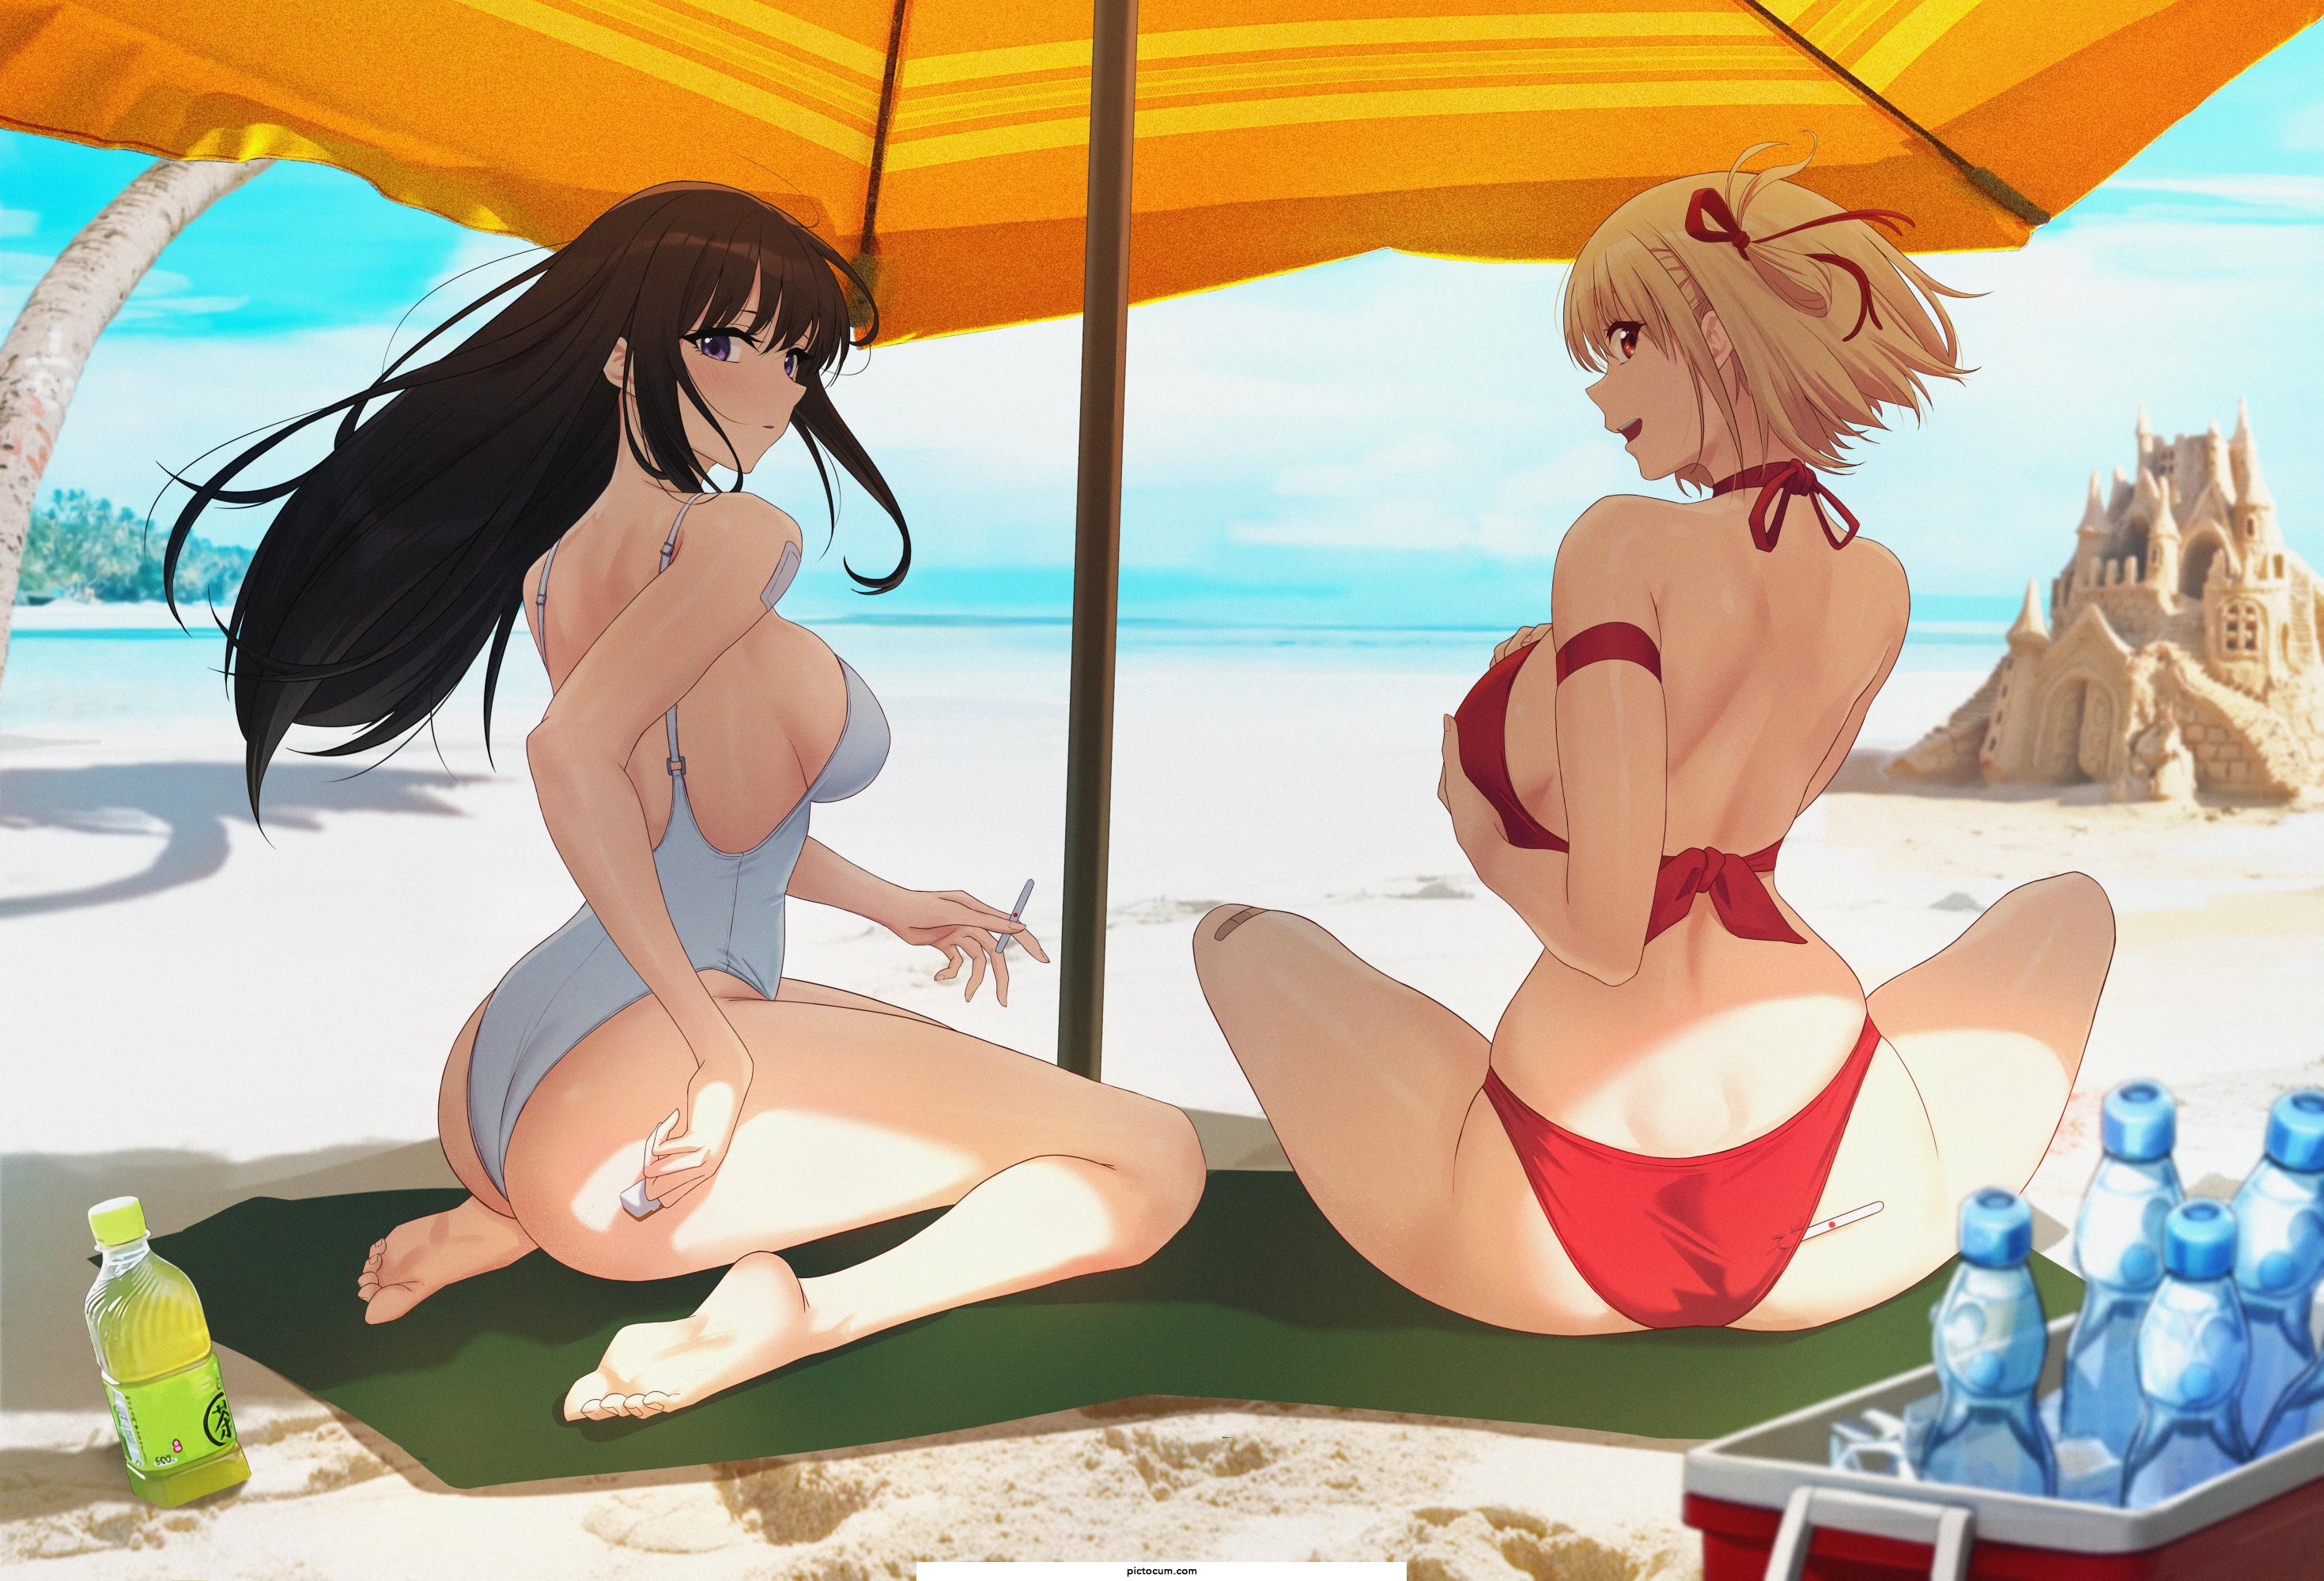 Chisato and Takina at the beach